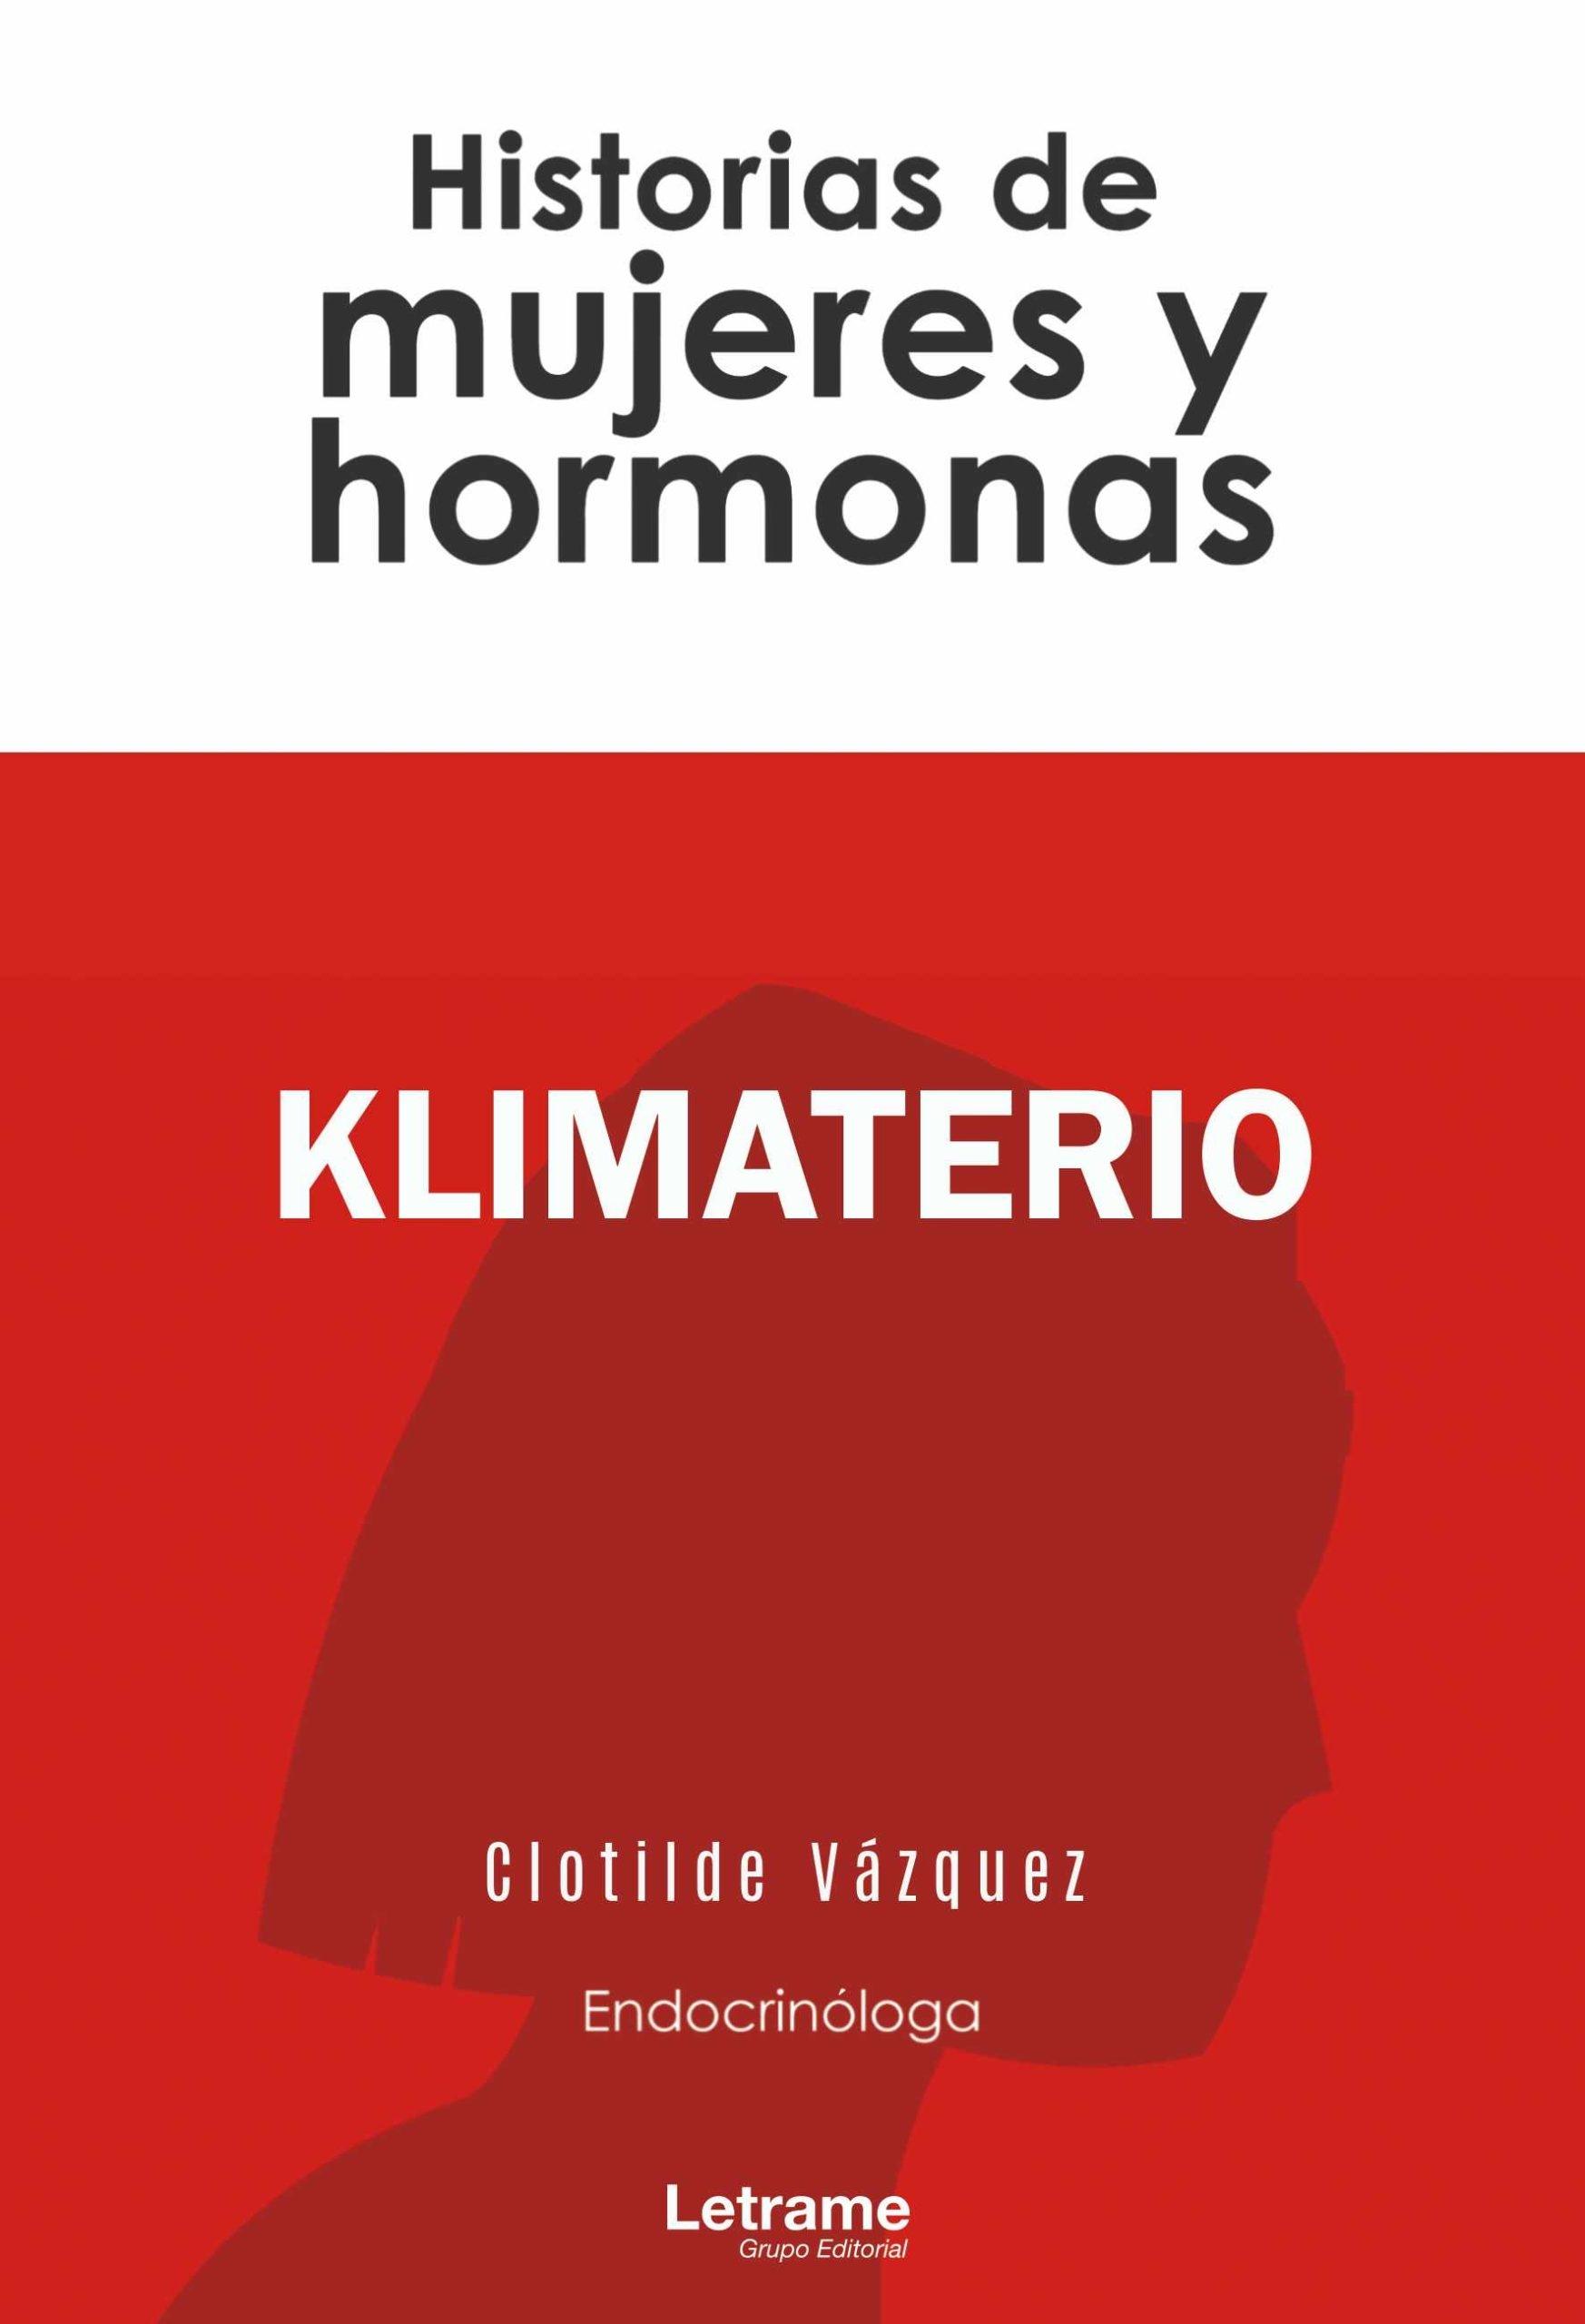 Klimaterio "Historias de mujeres y hormonas". 